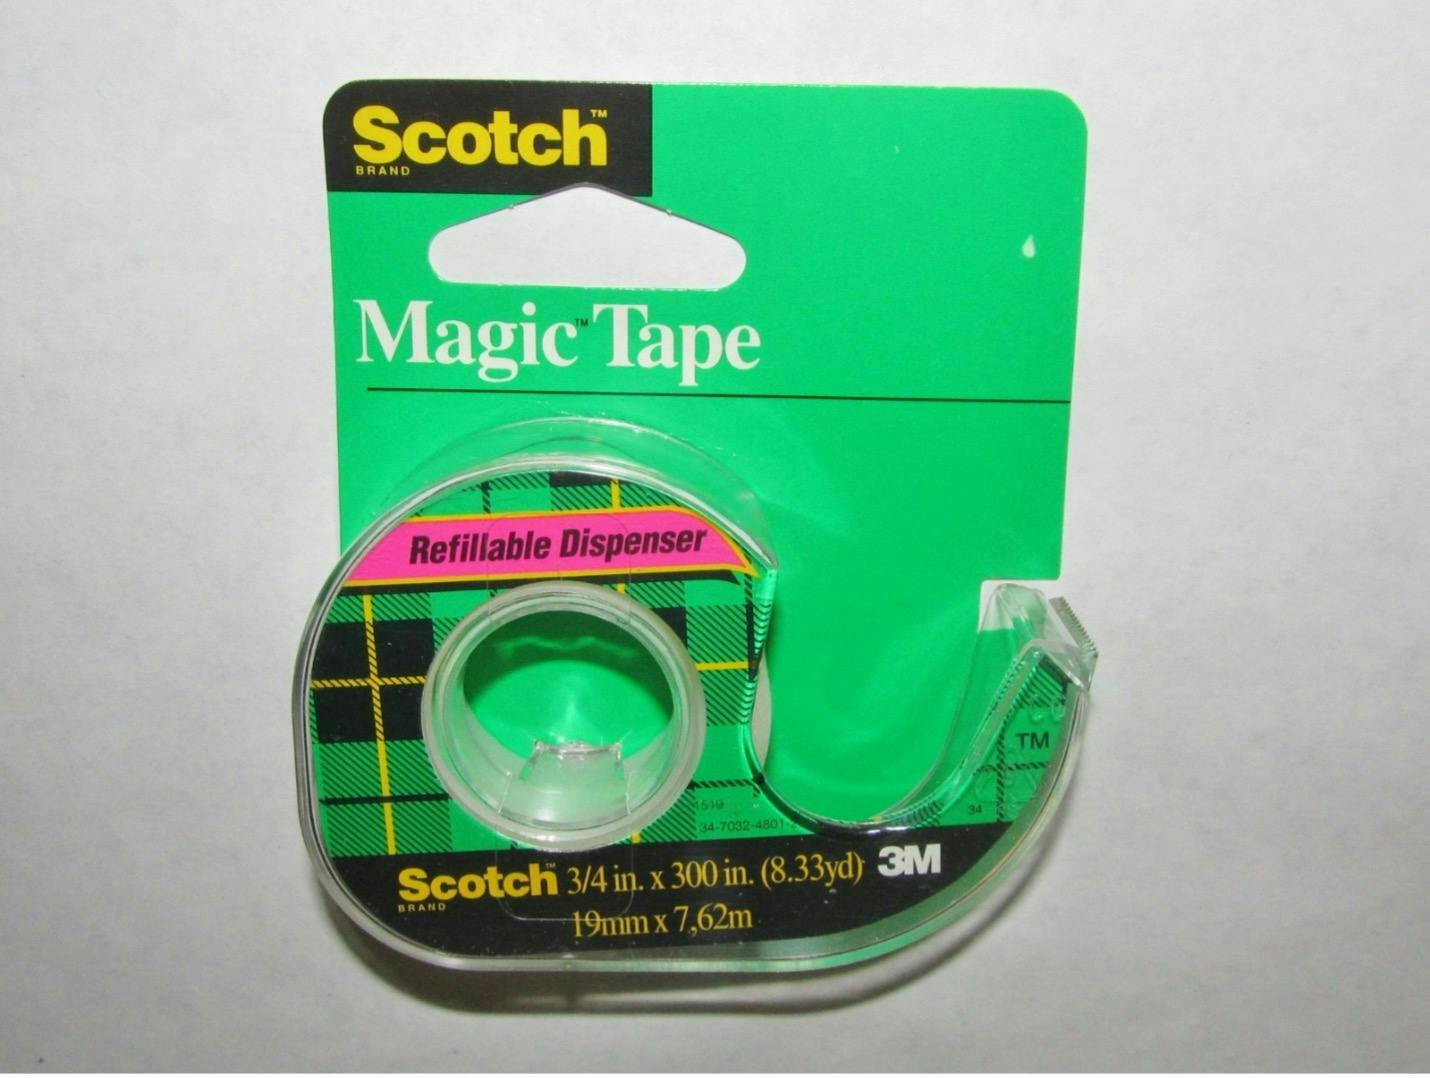 Scotch Magic Tape.